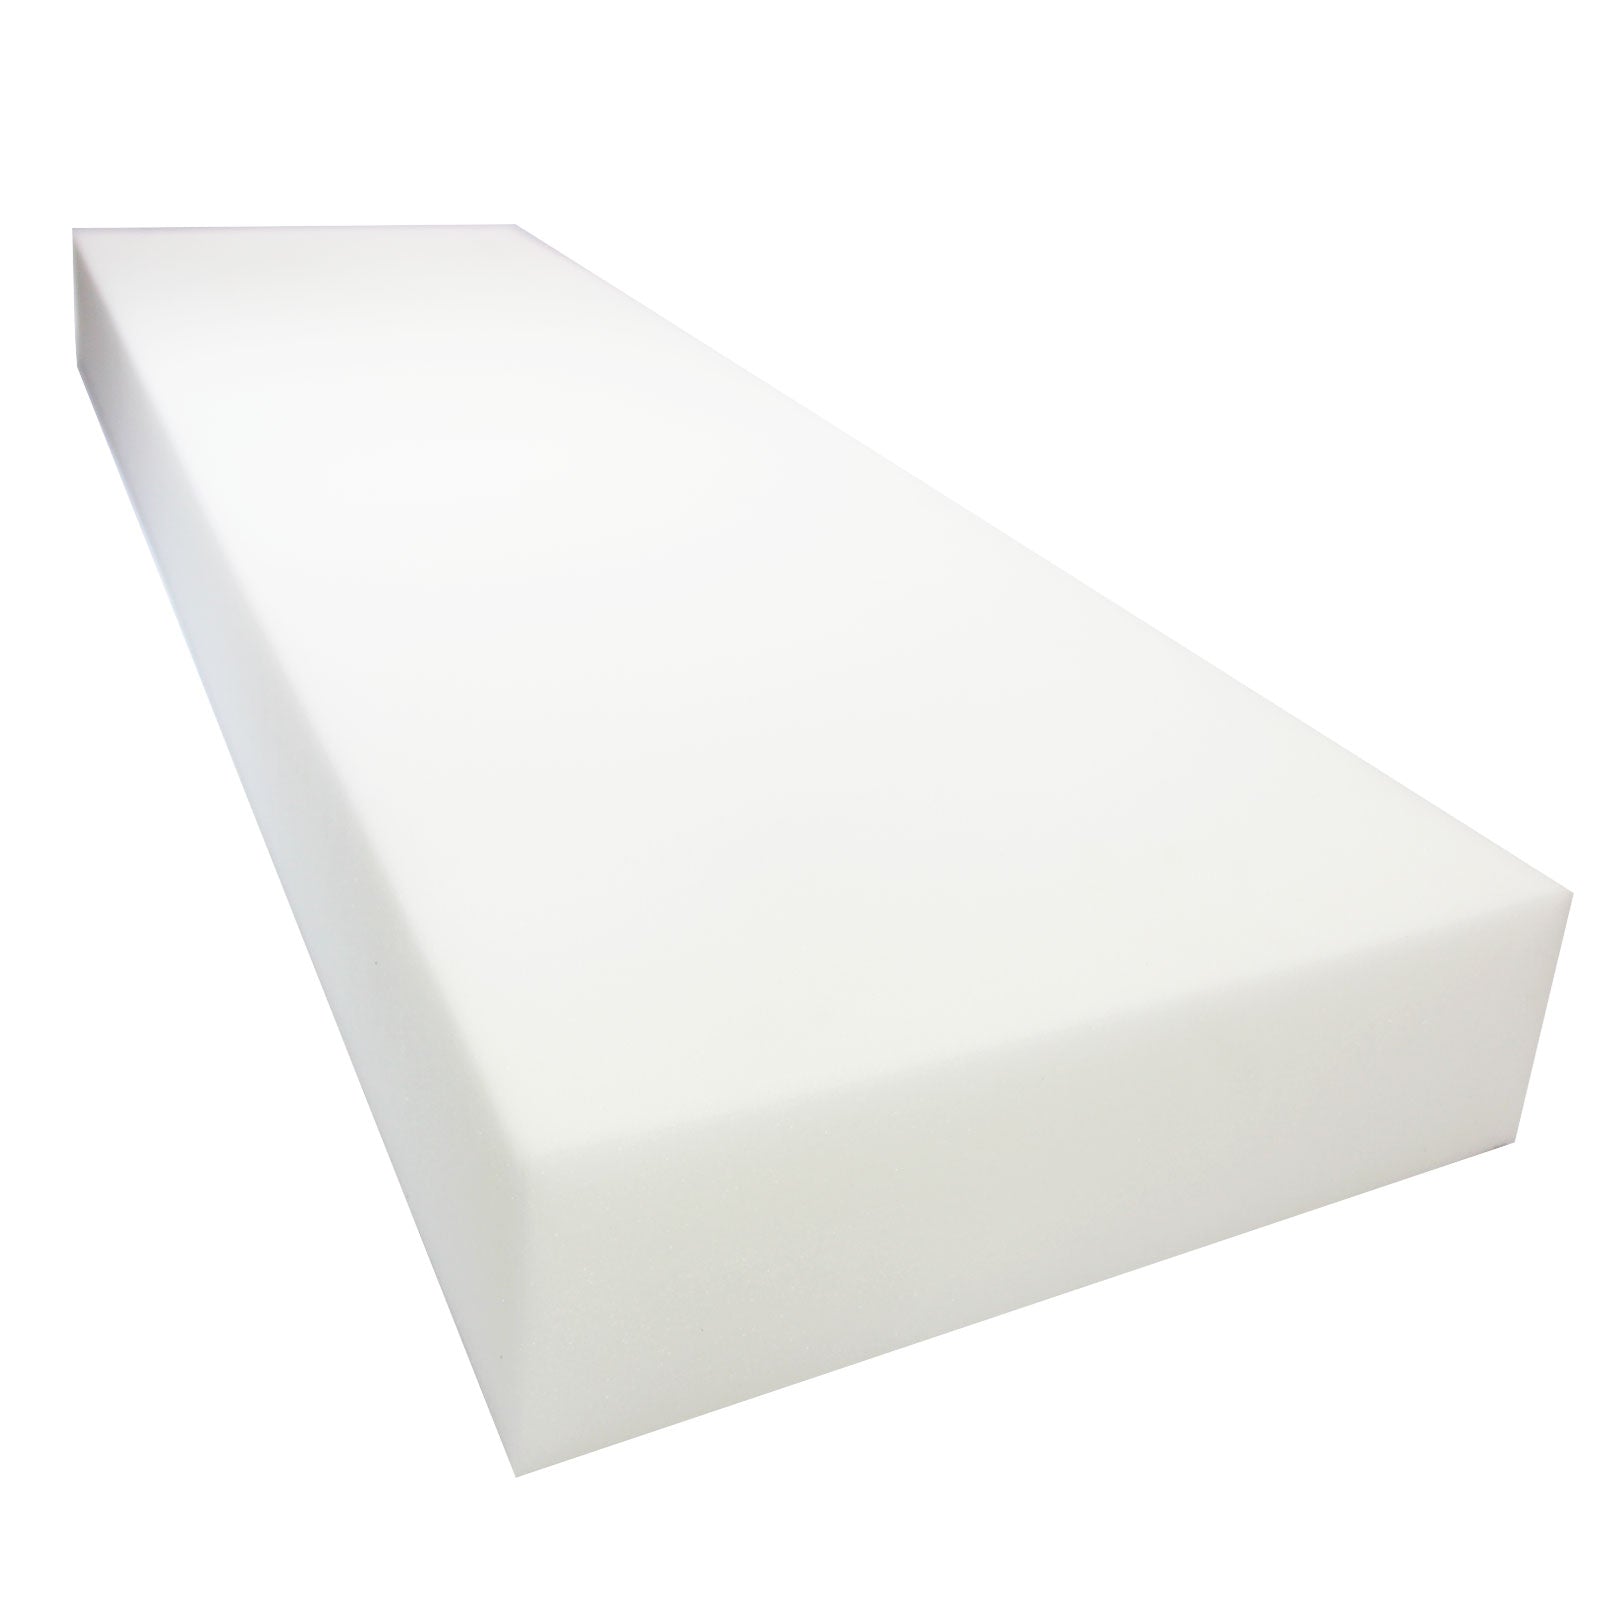 Airtex 1 x 24 High Density Foam Sheet